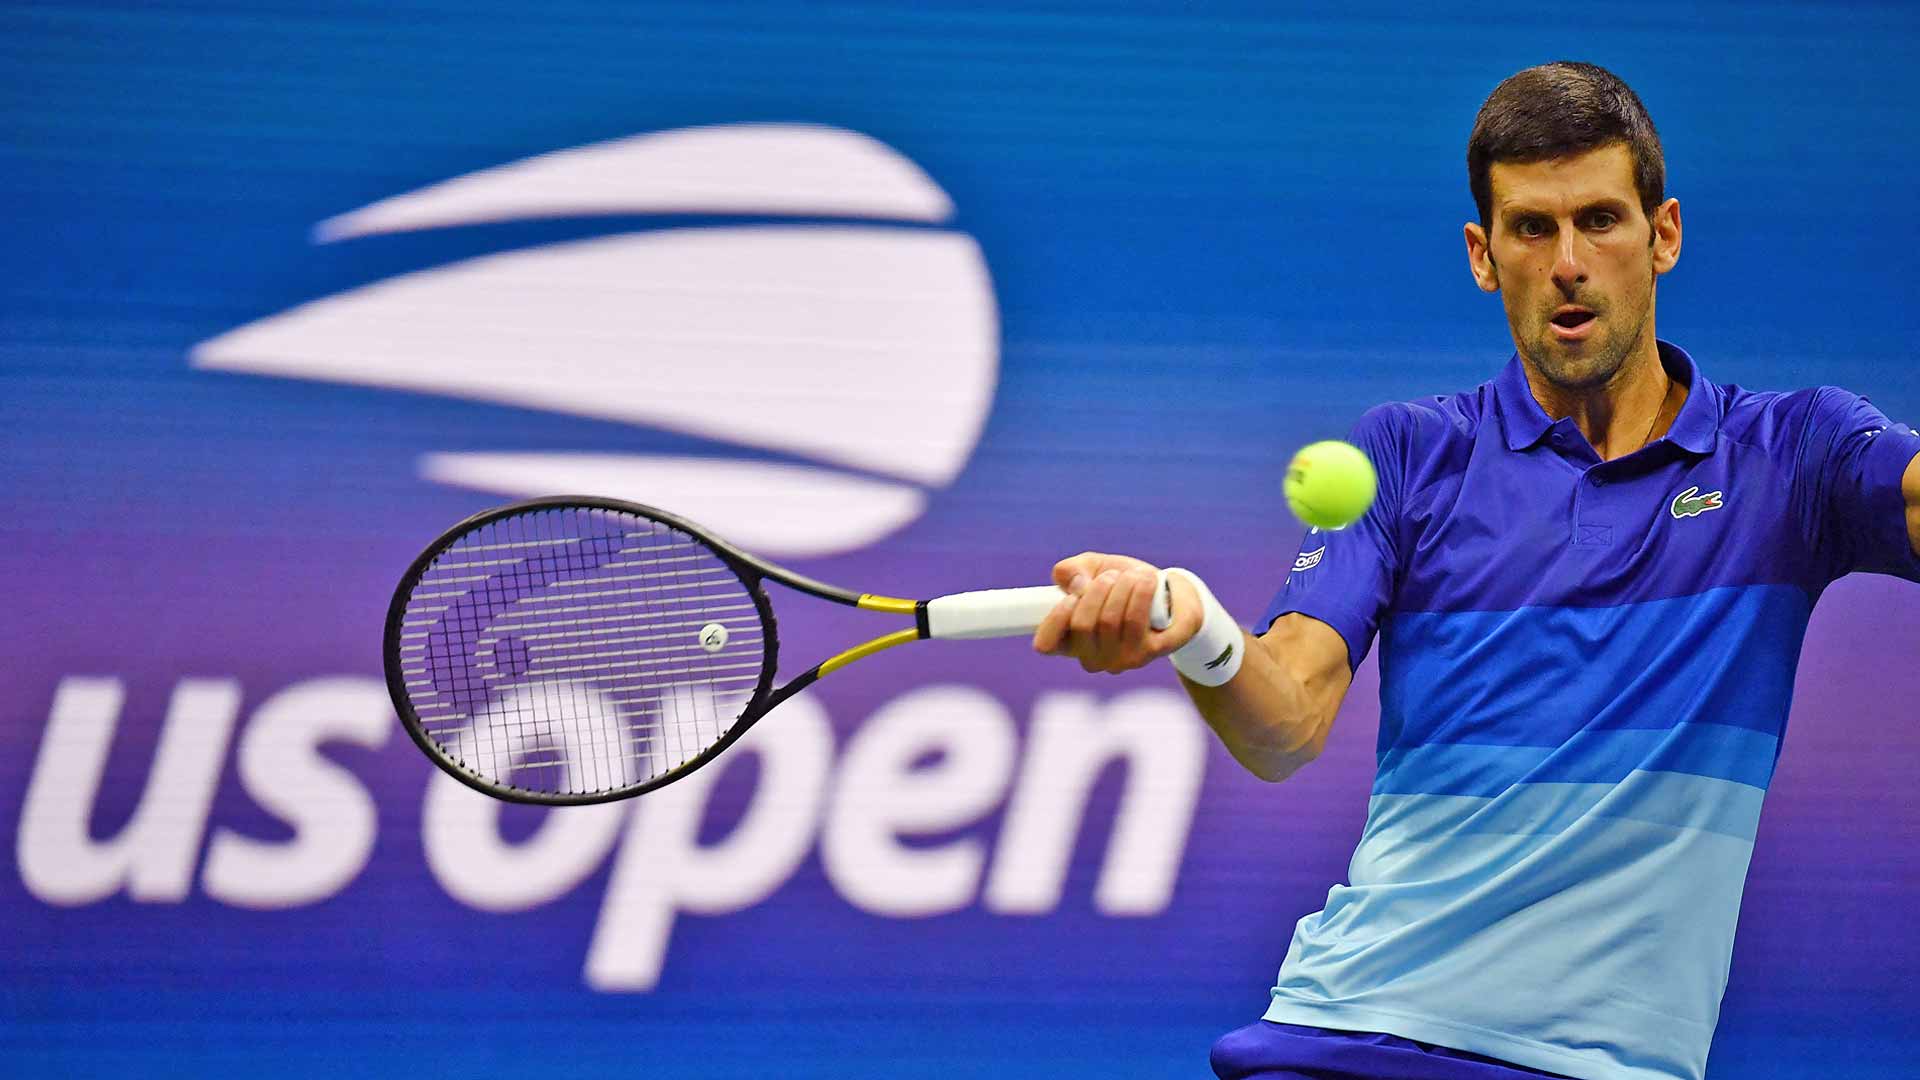 Gözler Djokovic'in üzerinde olacak; teniste grand slam dönemi ABD'de kapanıyor